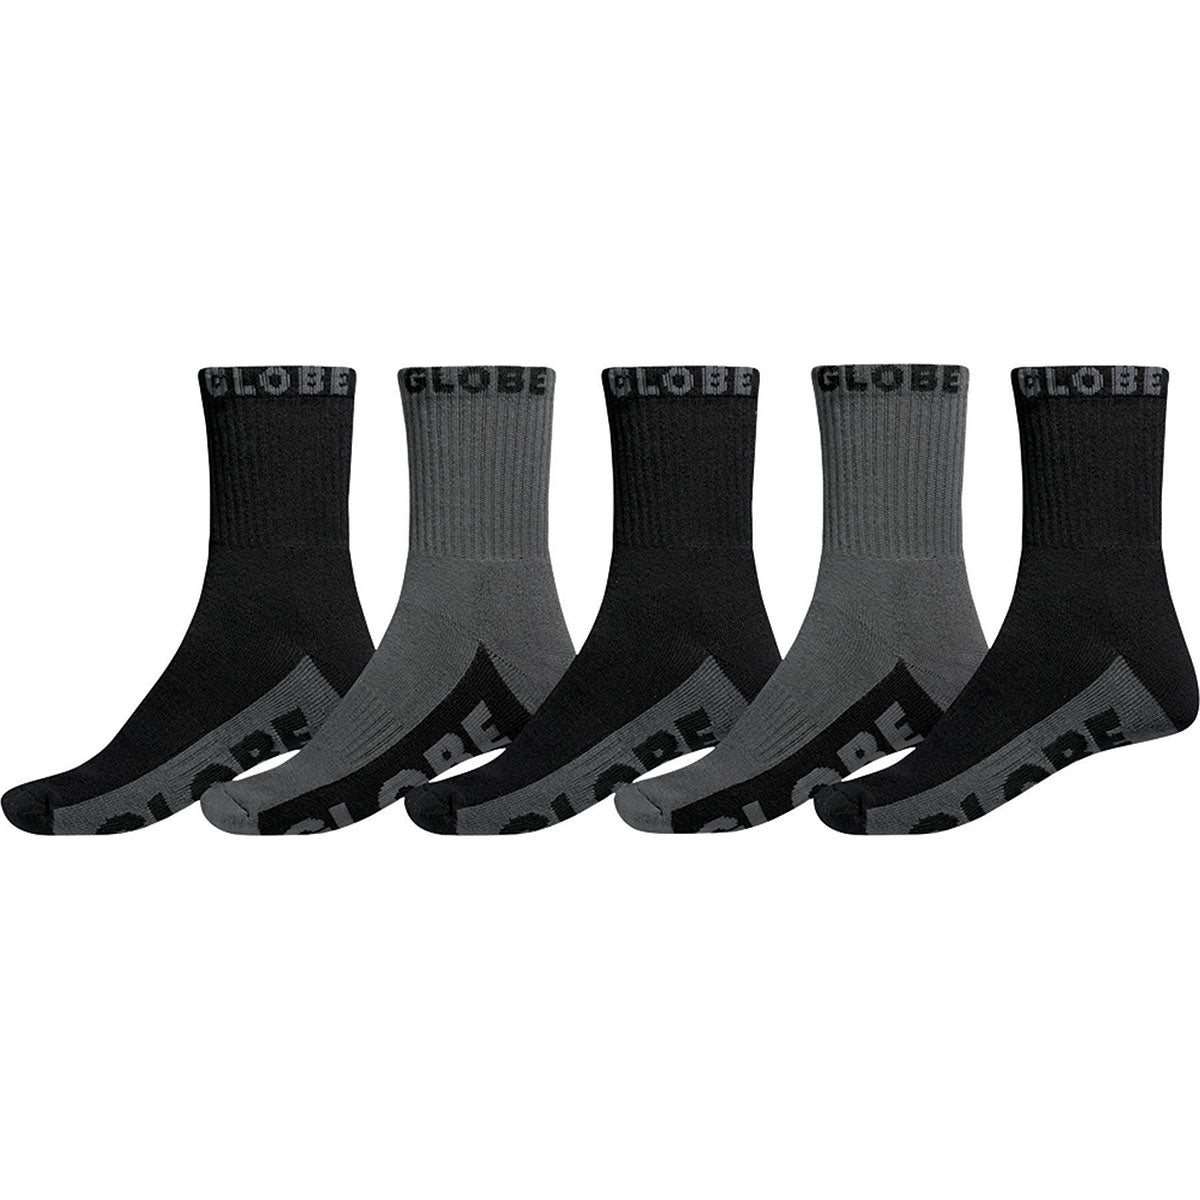 Black/Grey Crew 5Pk, Socks Globe Brand Australia